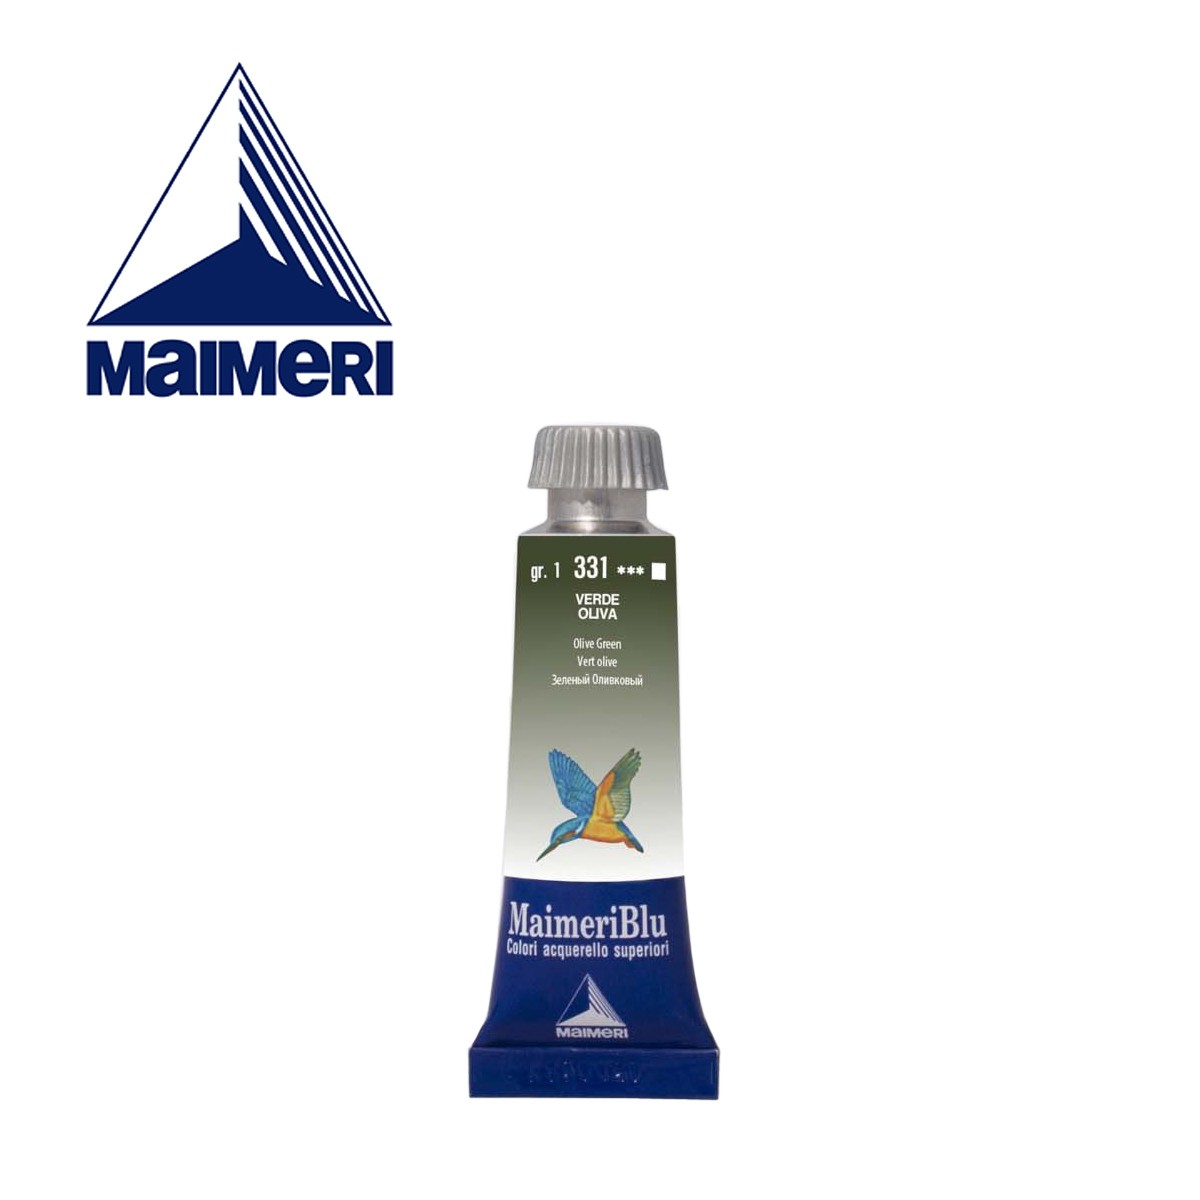 фото Maimeri краска акварельная maimeri blu, туба 15мл, 331 зеленый оливковый